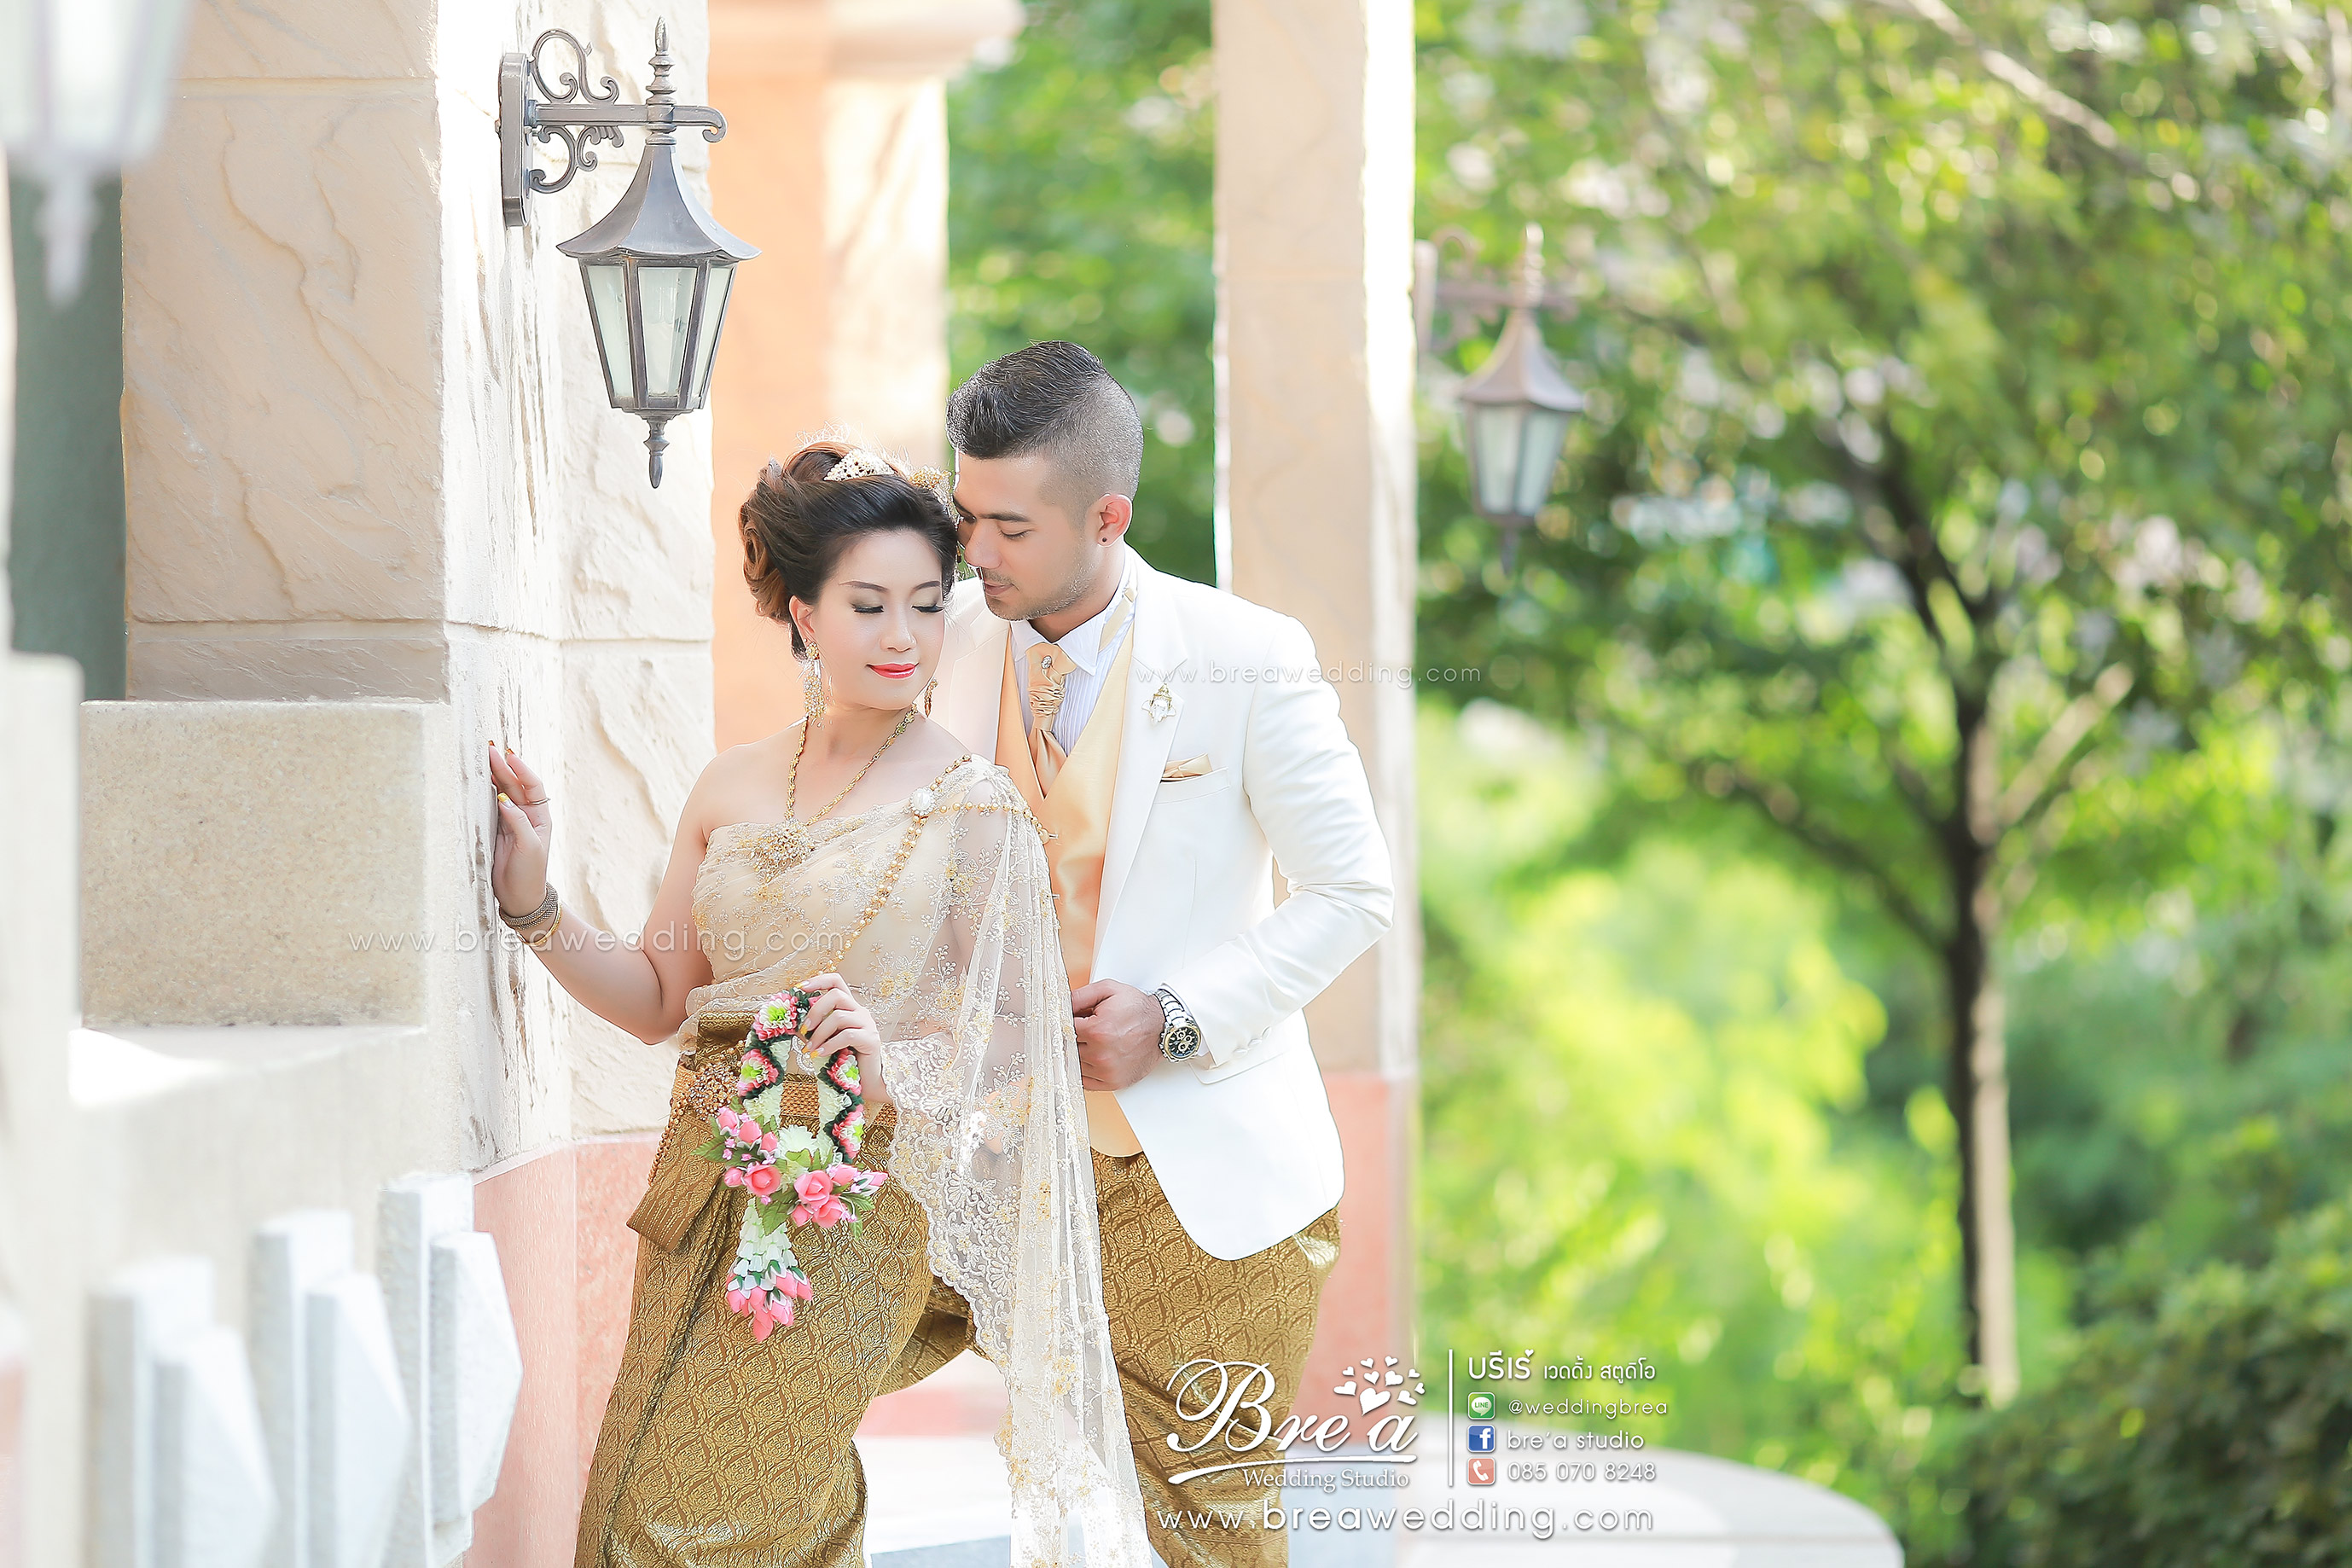 พรีเวดดิ้ง ถ่ายภาพแต่งงาน เช่าชุดแต่งงาน ร้านเวดดิ้งนนทบุรี 